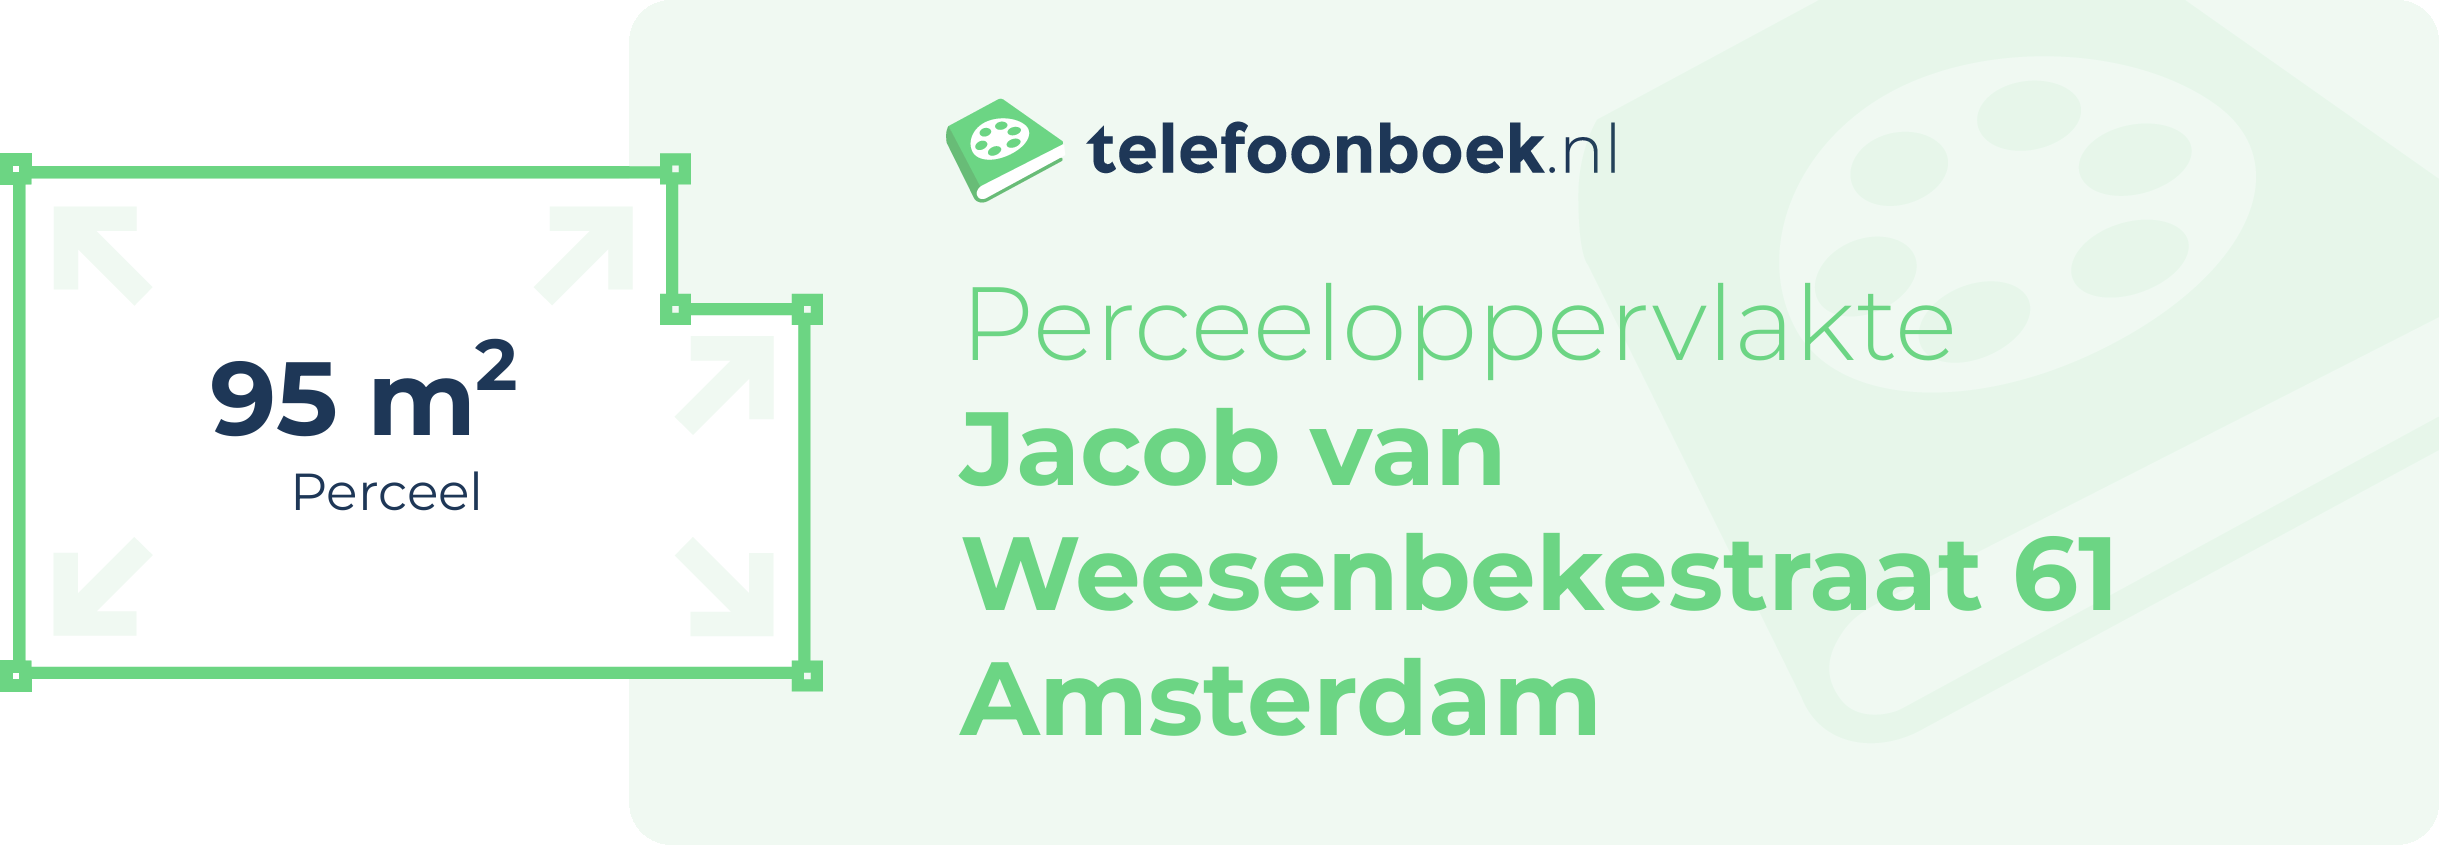 Perceeloppervlakte Jacob Van Weesenbekestraat 61 Amsterdam